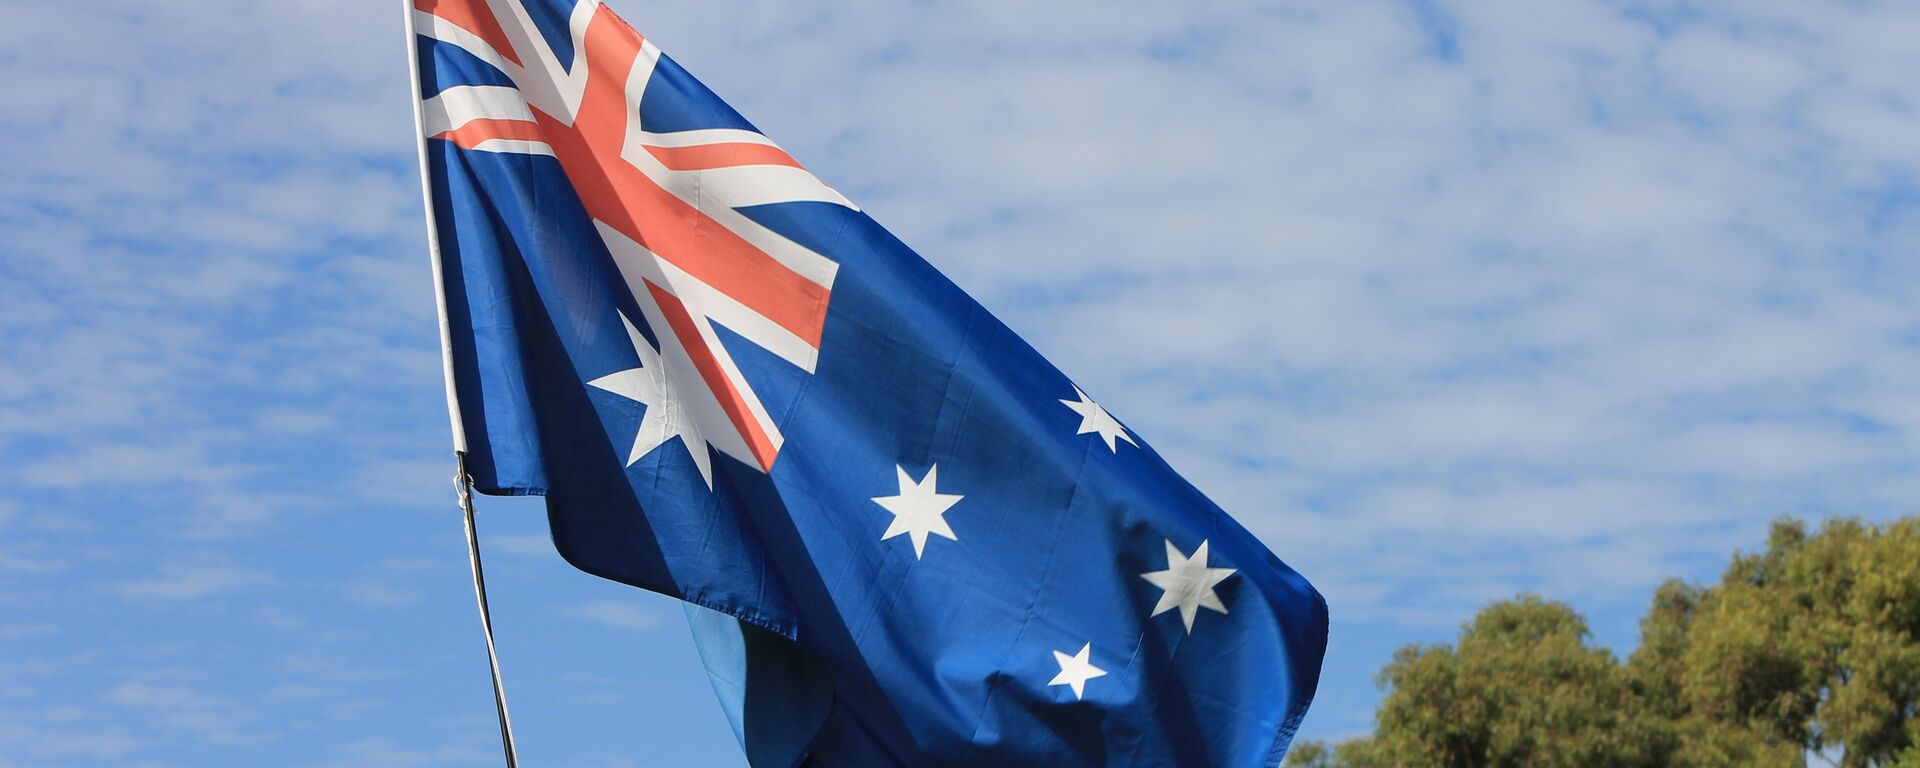 La bandera de Australia - Sputnik Mundo, 1920, 30.12.2020